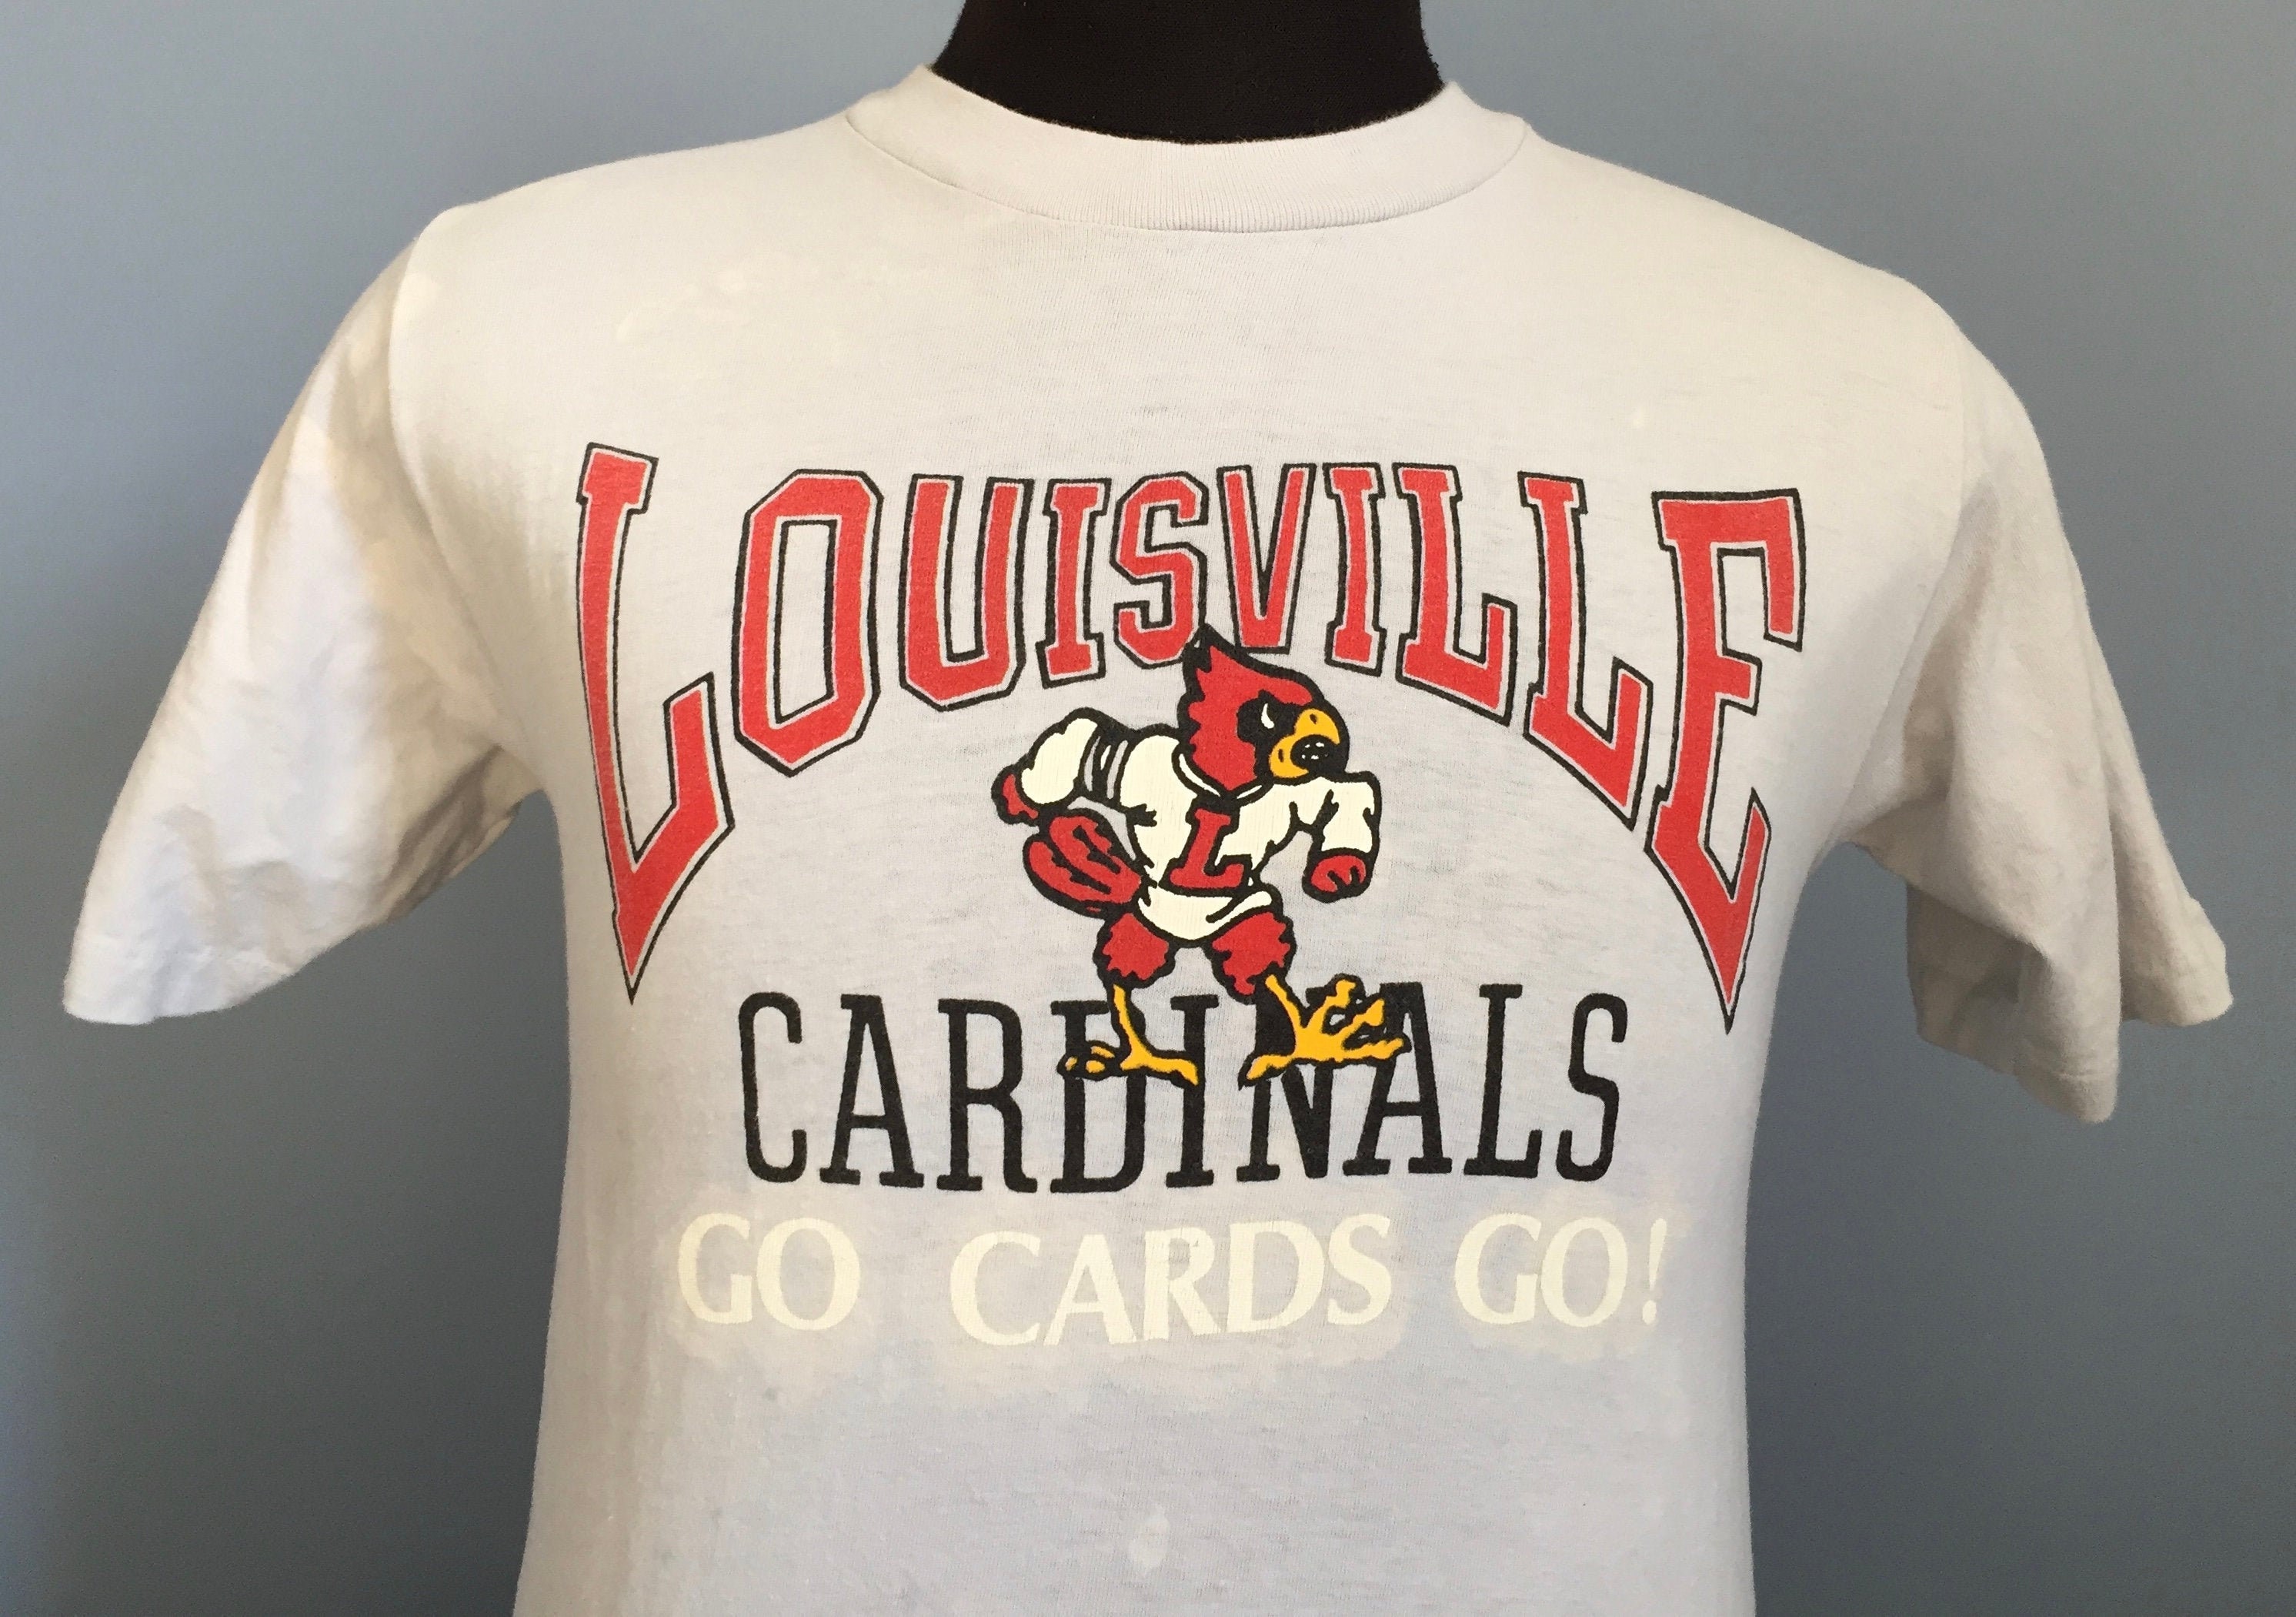 Kentucky Wildcats Vs. Louisville Cardinals Drink Em' Under The Table Shirt